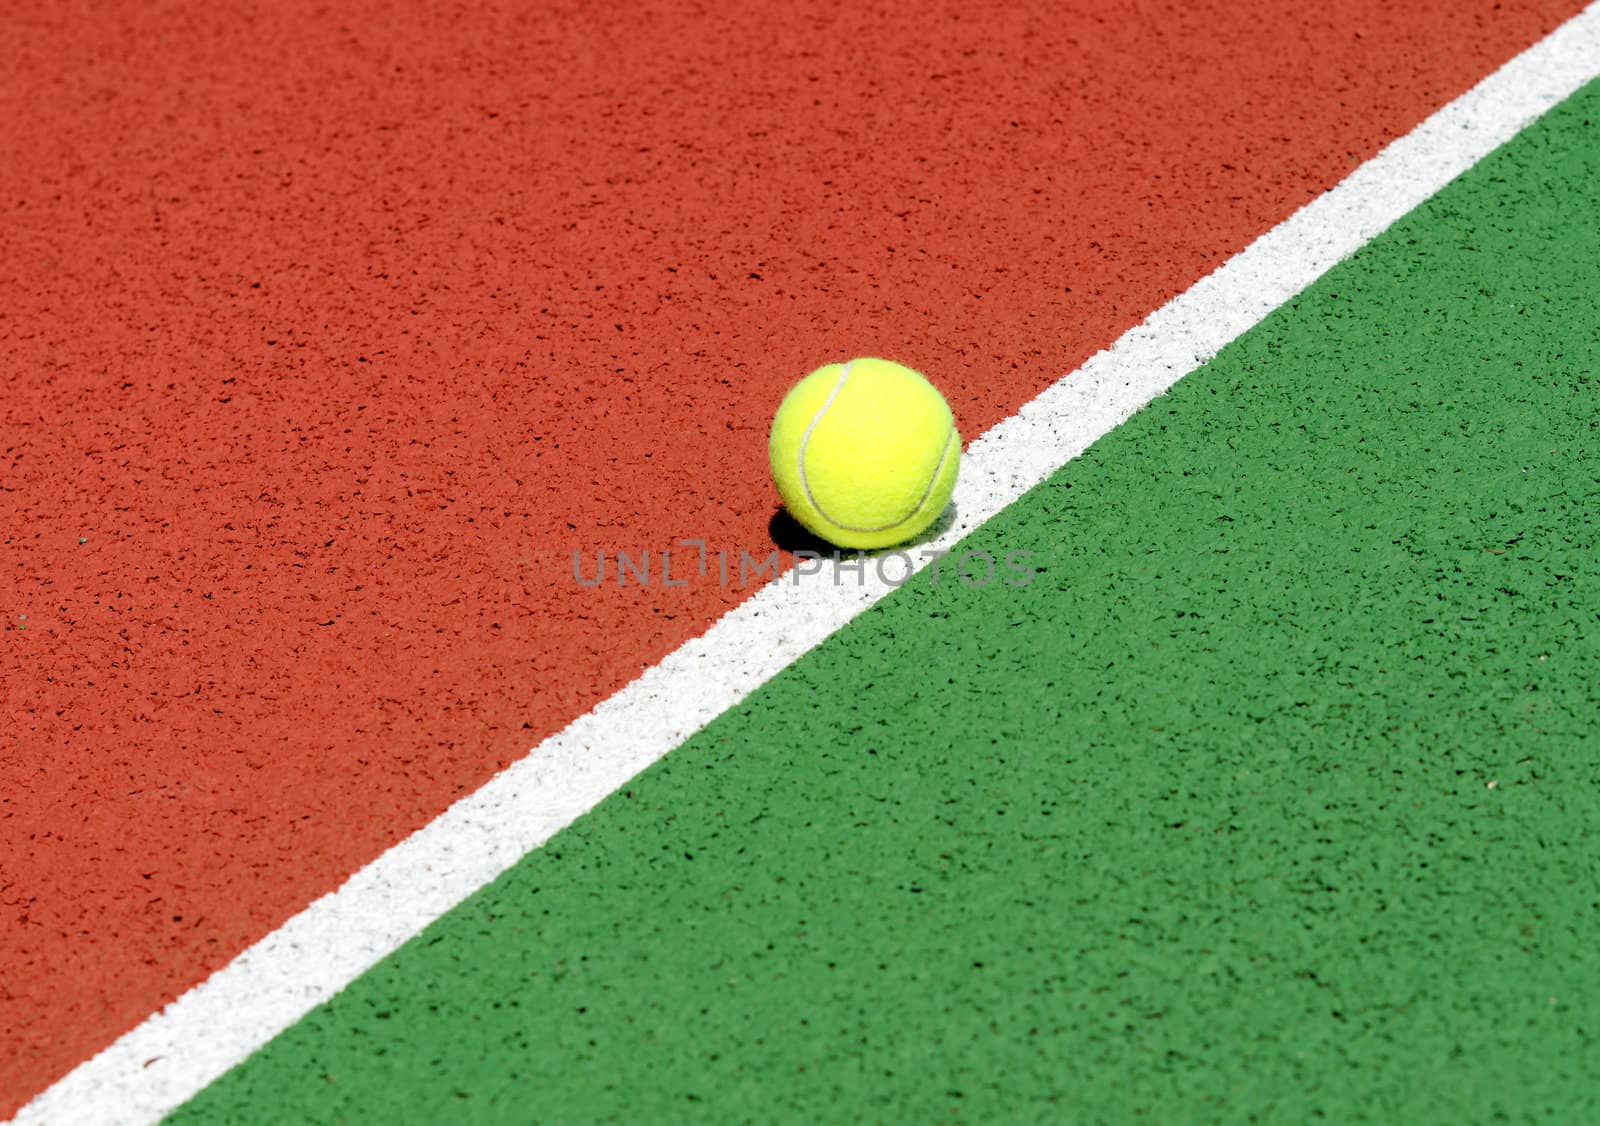 Tennis ball on a tennis court
